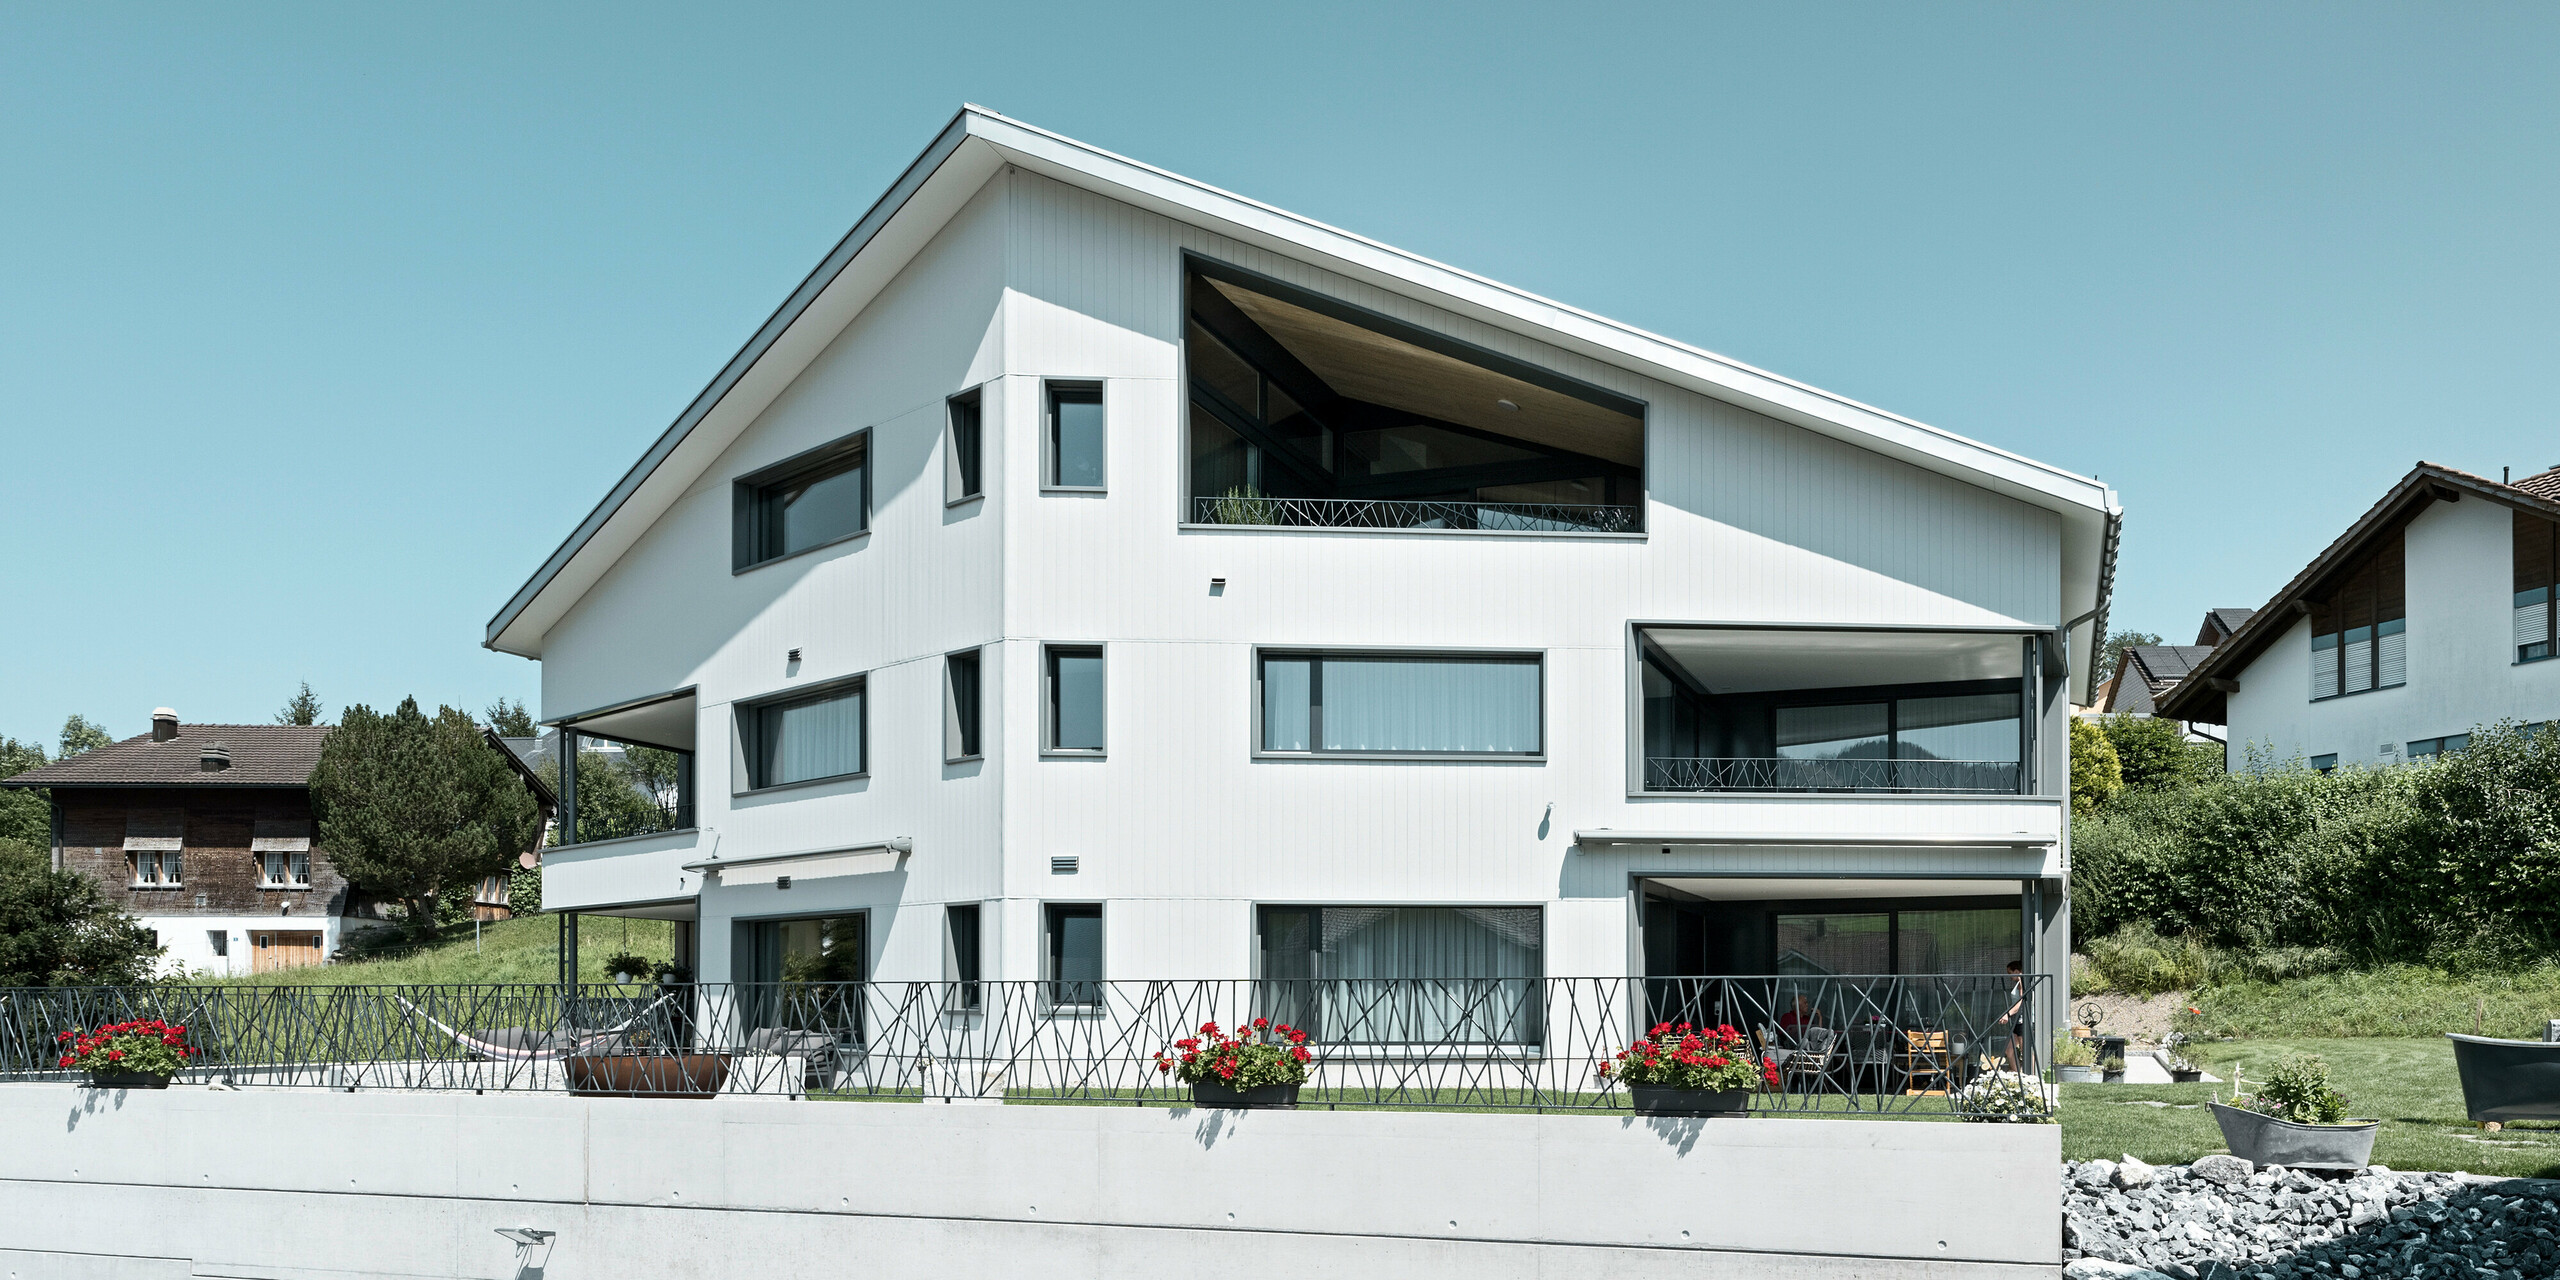 Bytový dům ve švýcarském městě Weissbad je opláštěn fasádními lamelami PREFA Siding v barvě P.10 prefa bílé